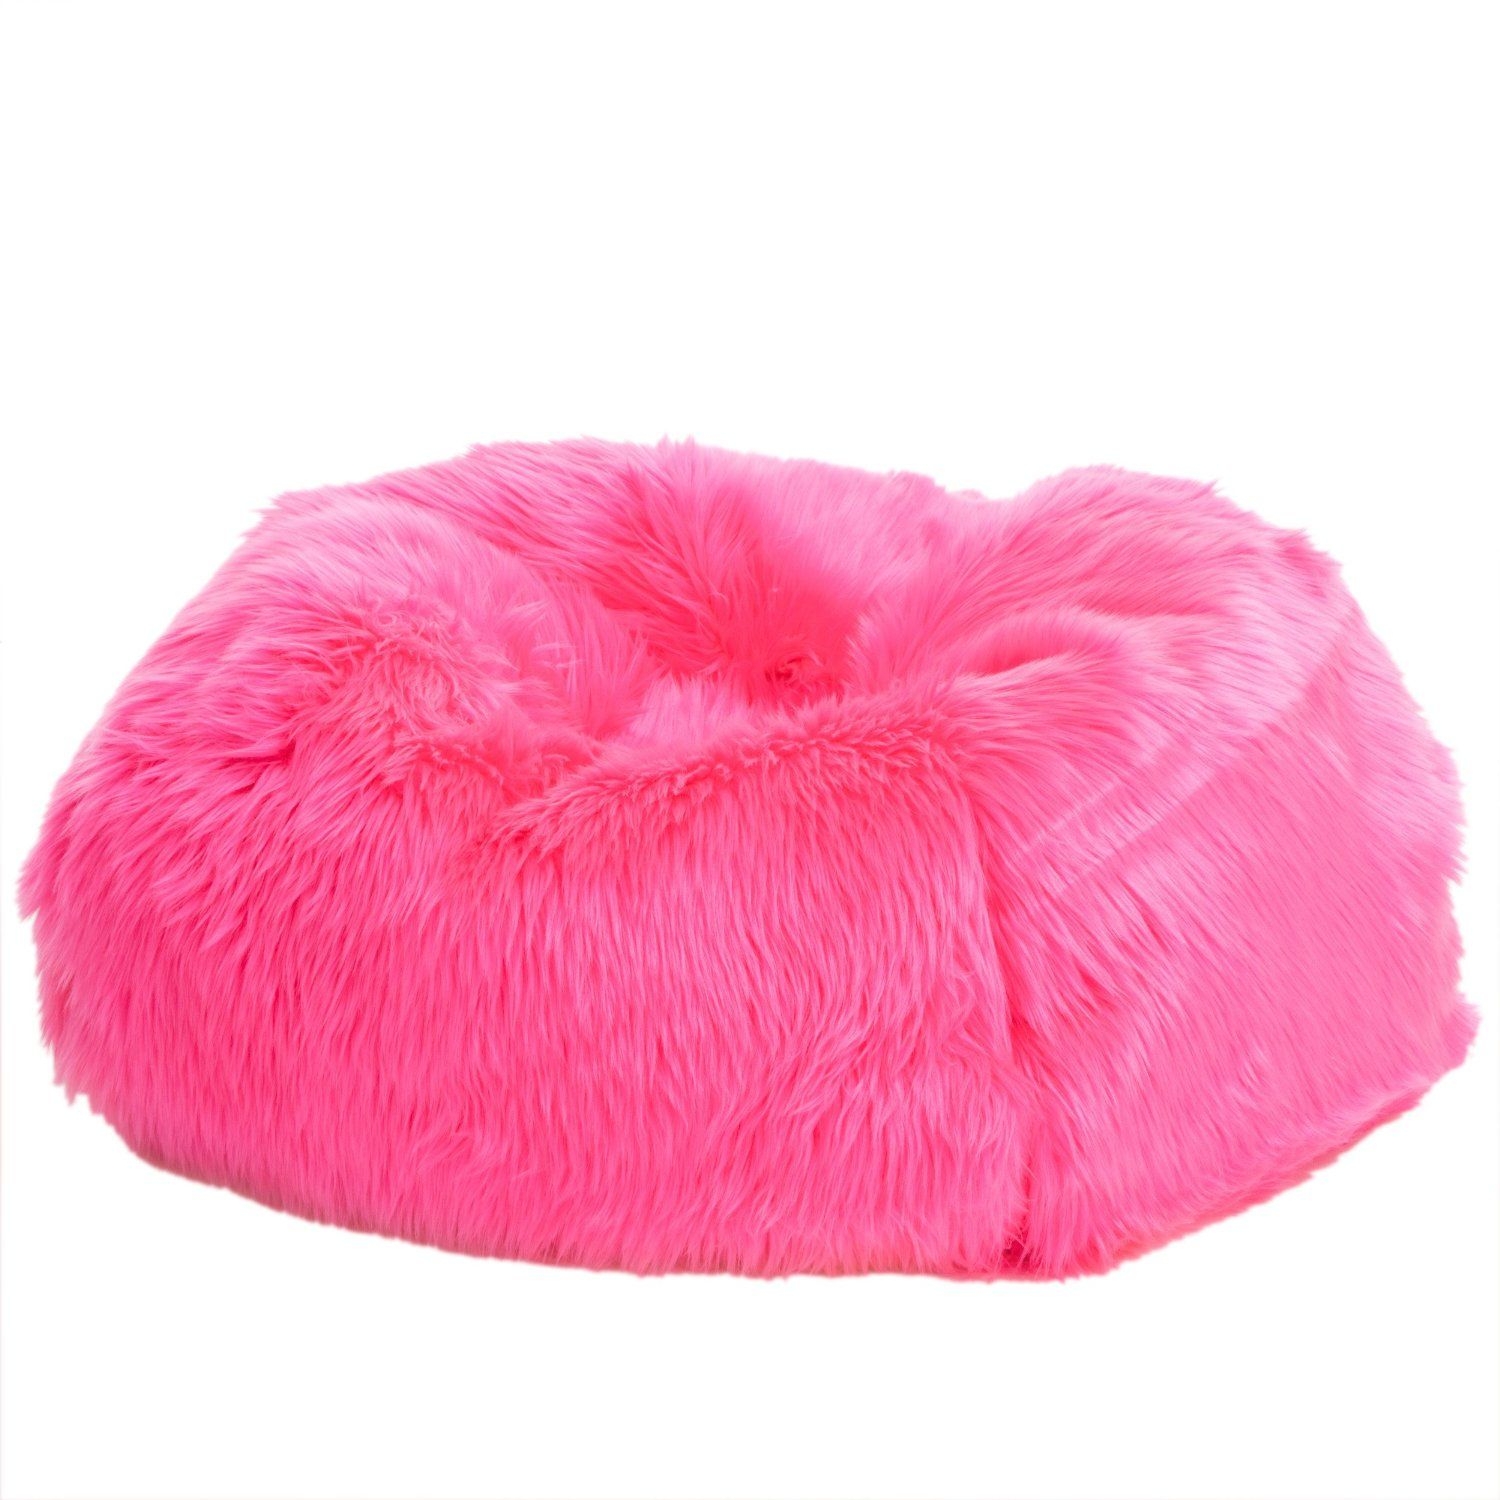 Abbey Neon Pink Fur Bean Bag